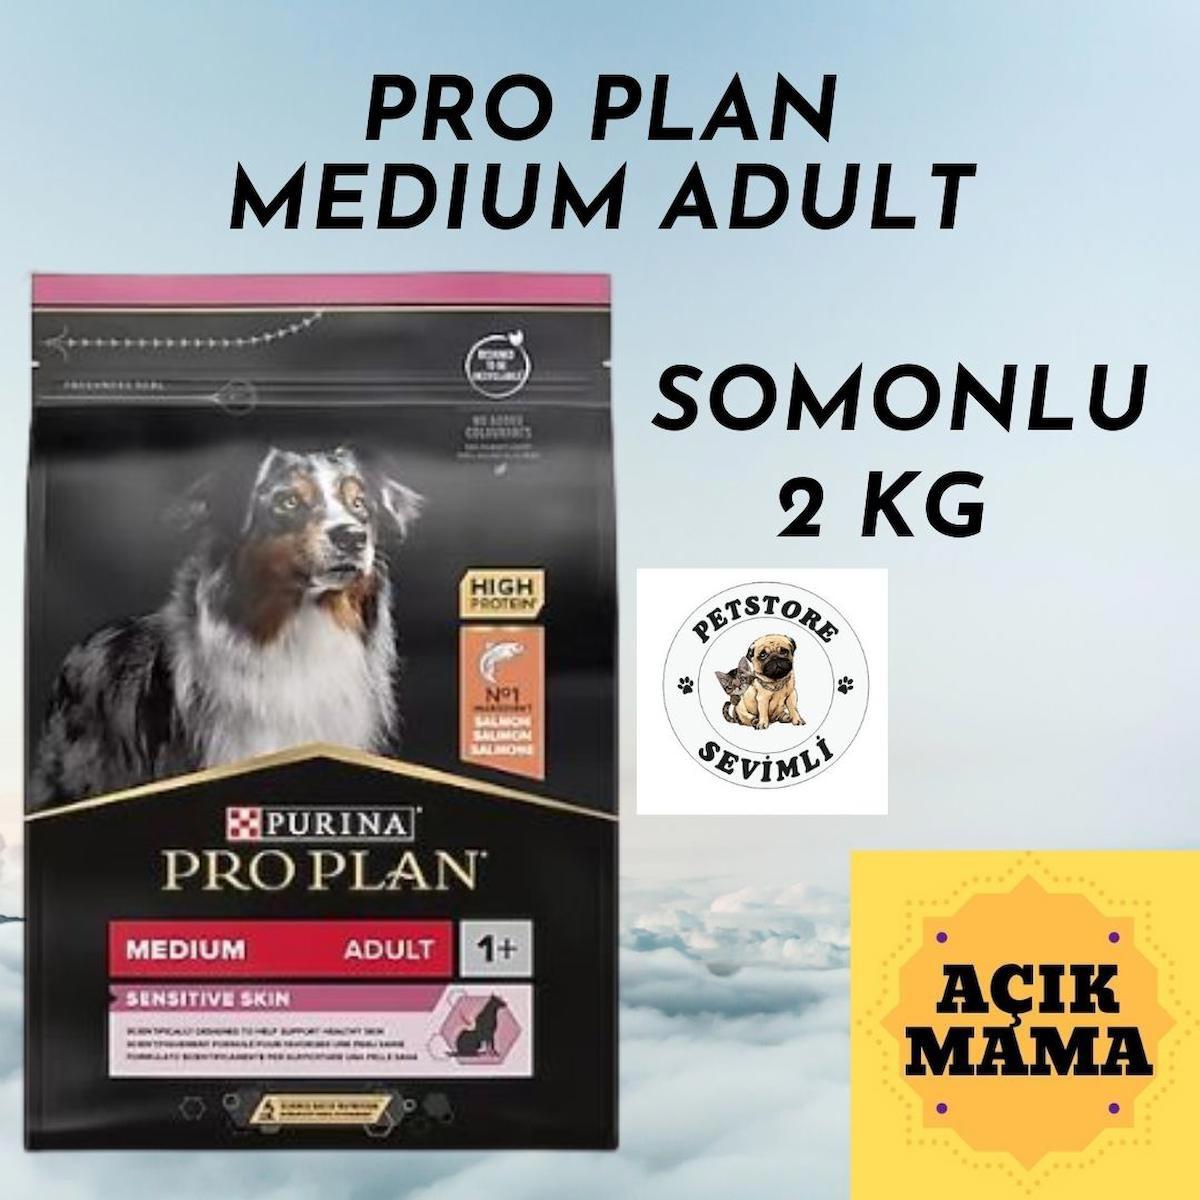 Pro Plan Sensitive Skin High Protein Pirinçli ve Somonlu Orta Irk Yetişkin Kuru Köpek Maması 2 kg